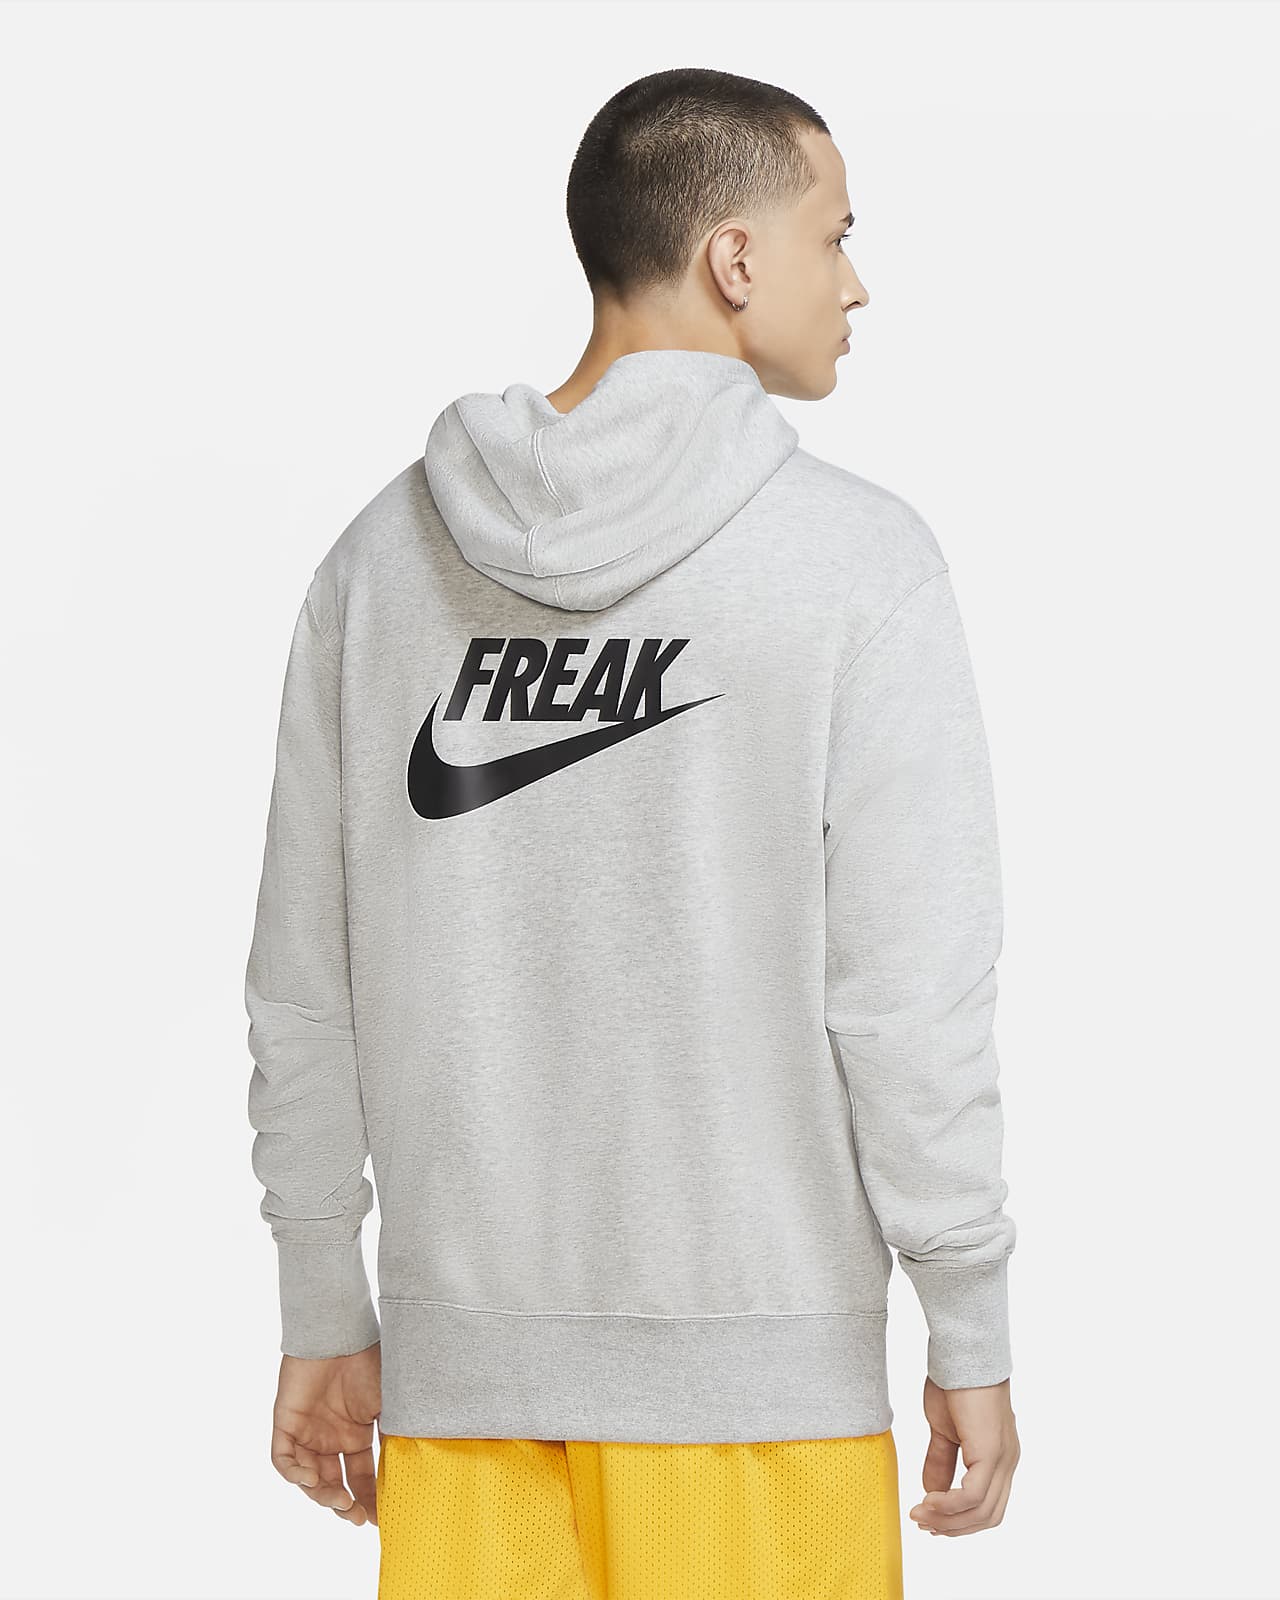 giannis freak hoodie grey